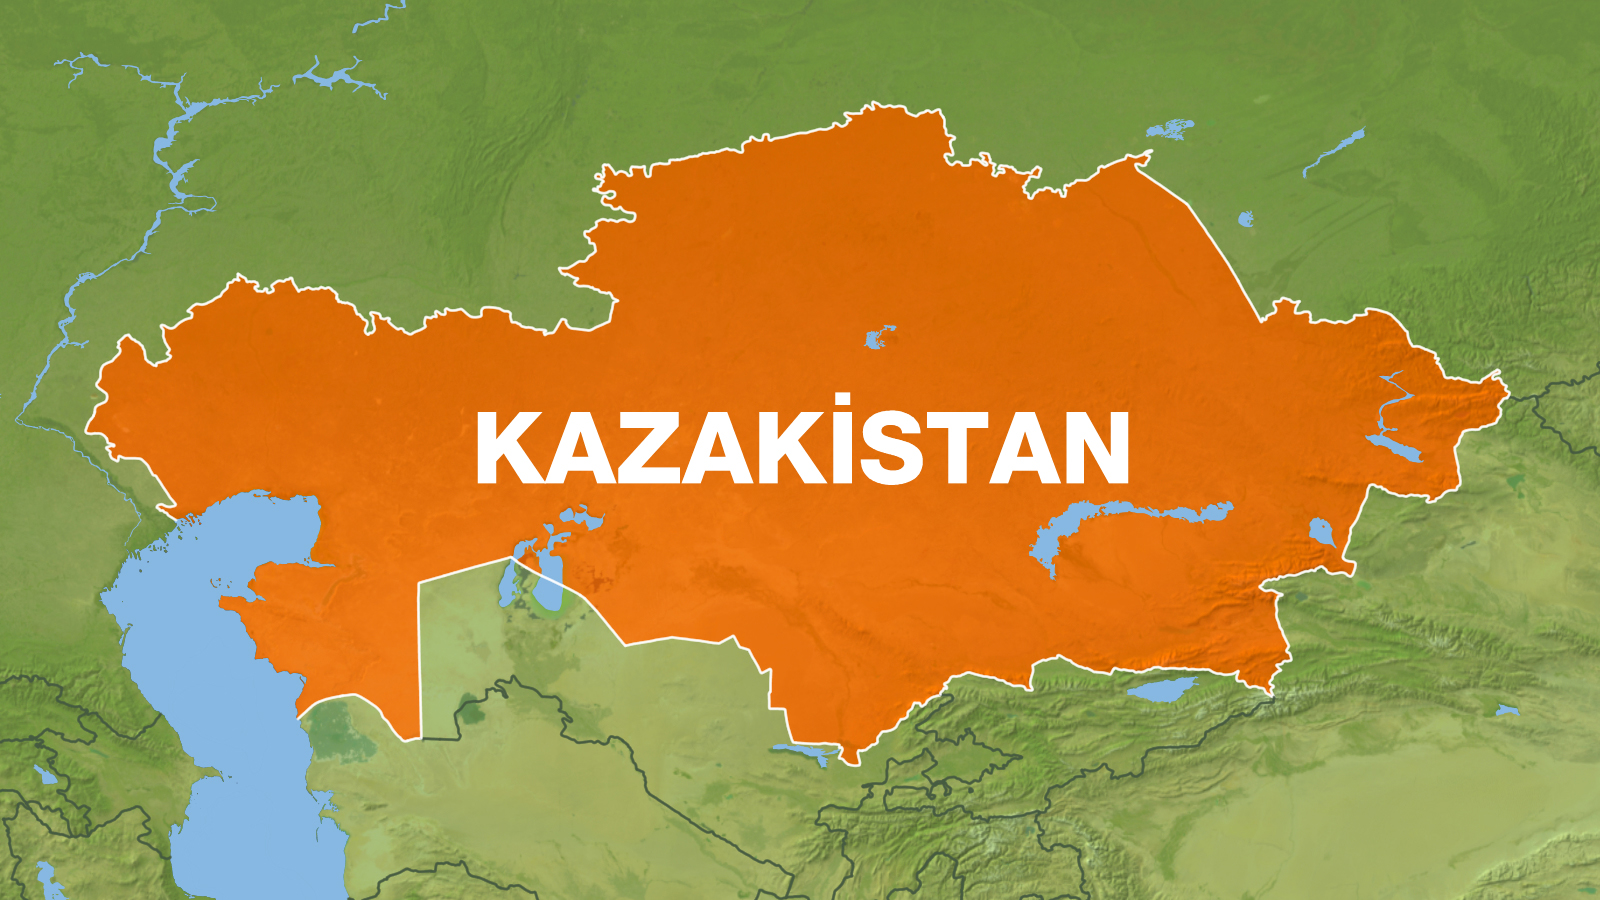 Kazakistan İlave Transit Geçiş  Belgelerinin Temini Hakkında